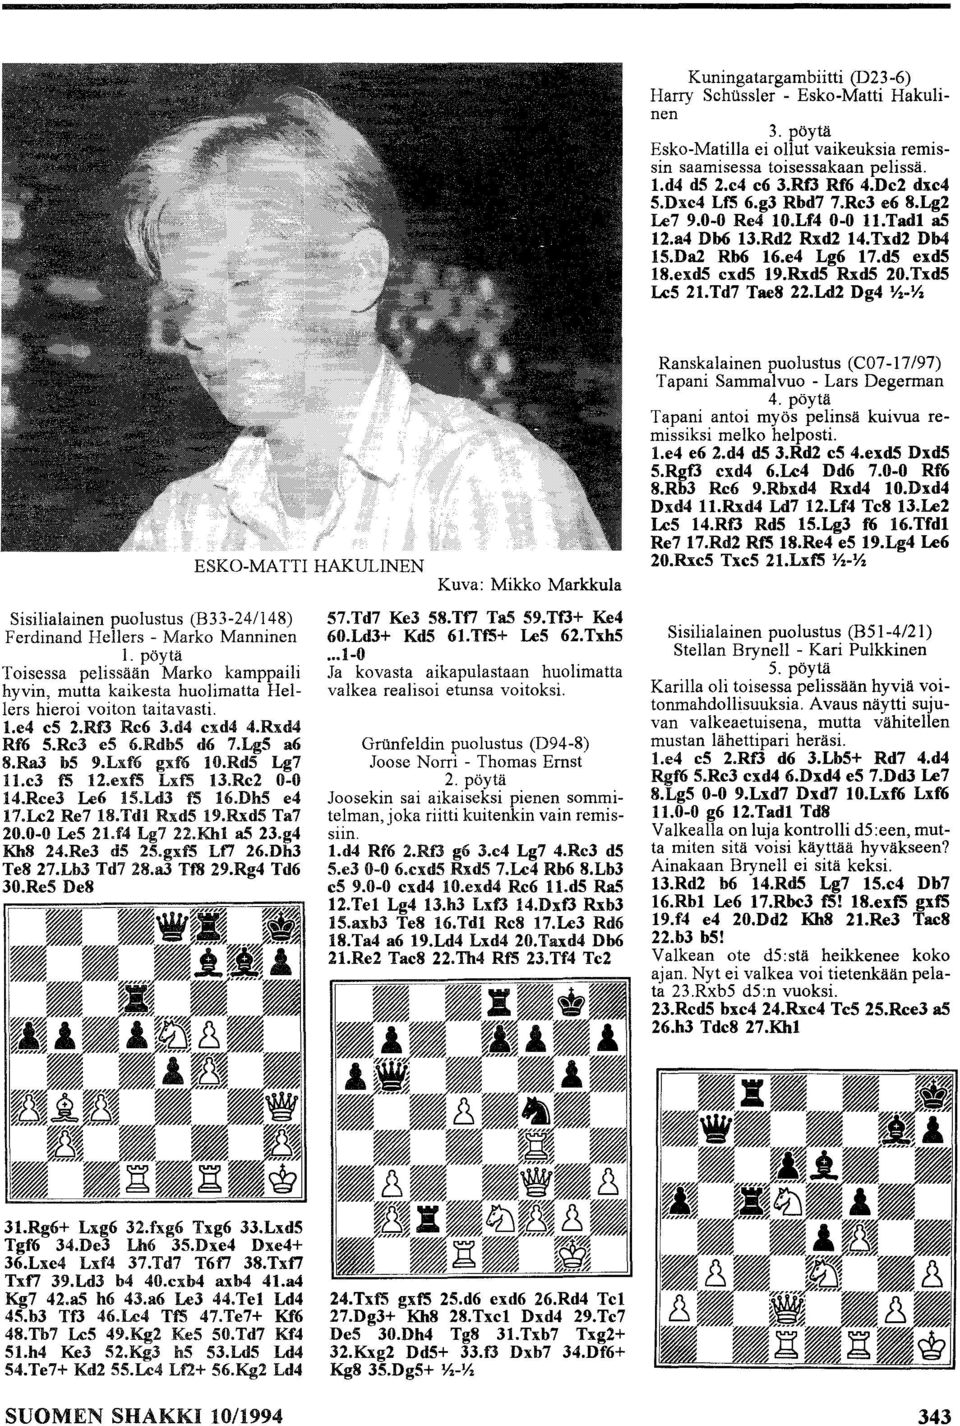 Ld2 Dg4 YZ-YZ Sisilialainen puolustus (B33-241148) Ferdinand Hellers - Marko Manninen 1. pöytä Toisessa pelissään Marko kamppaili hyvin, mutta kaikesta huolimatta Hellers hieroi voiton taitavasti. 1.e4 es 2.